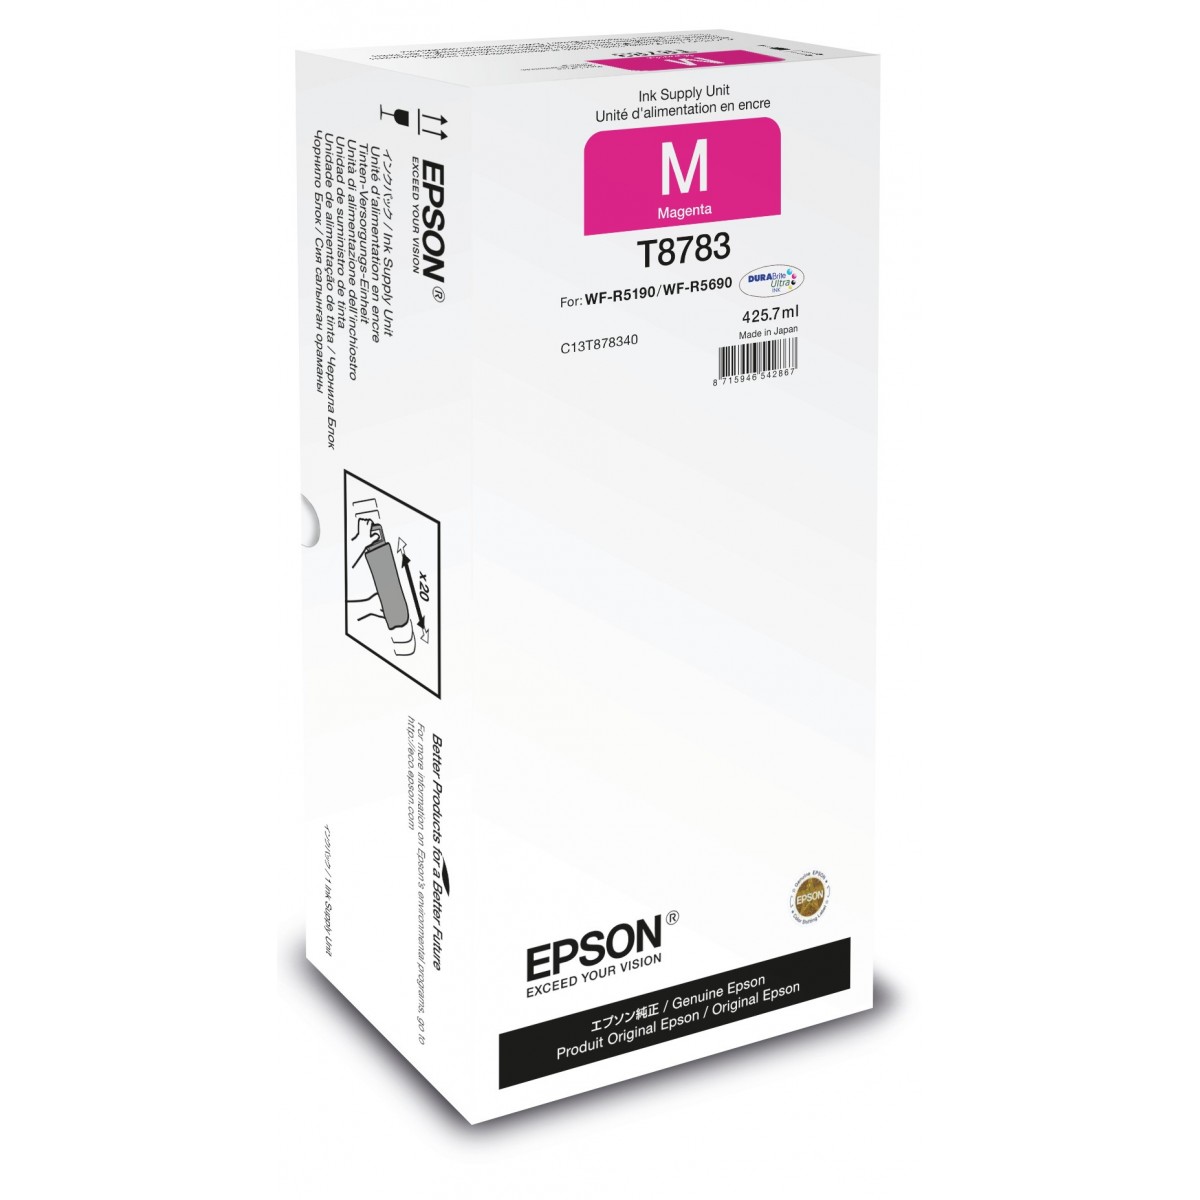 Epson Magenta XXL Ink Supply Unit - Original - Pigment-based ink - Magenta - WorkForce Pro WF-R5xxx - 1 pc(s) - Japan